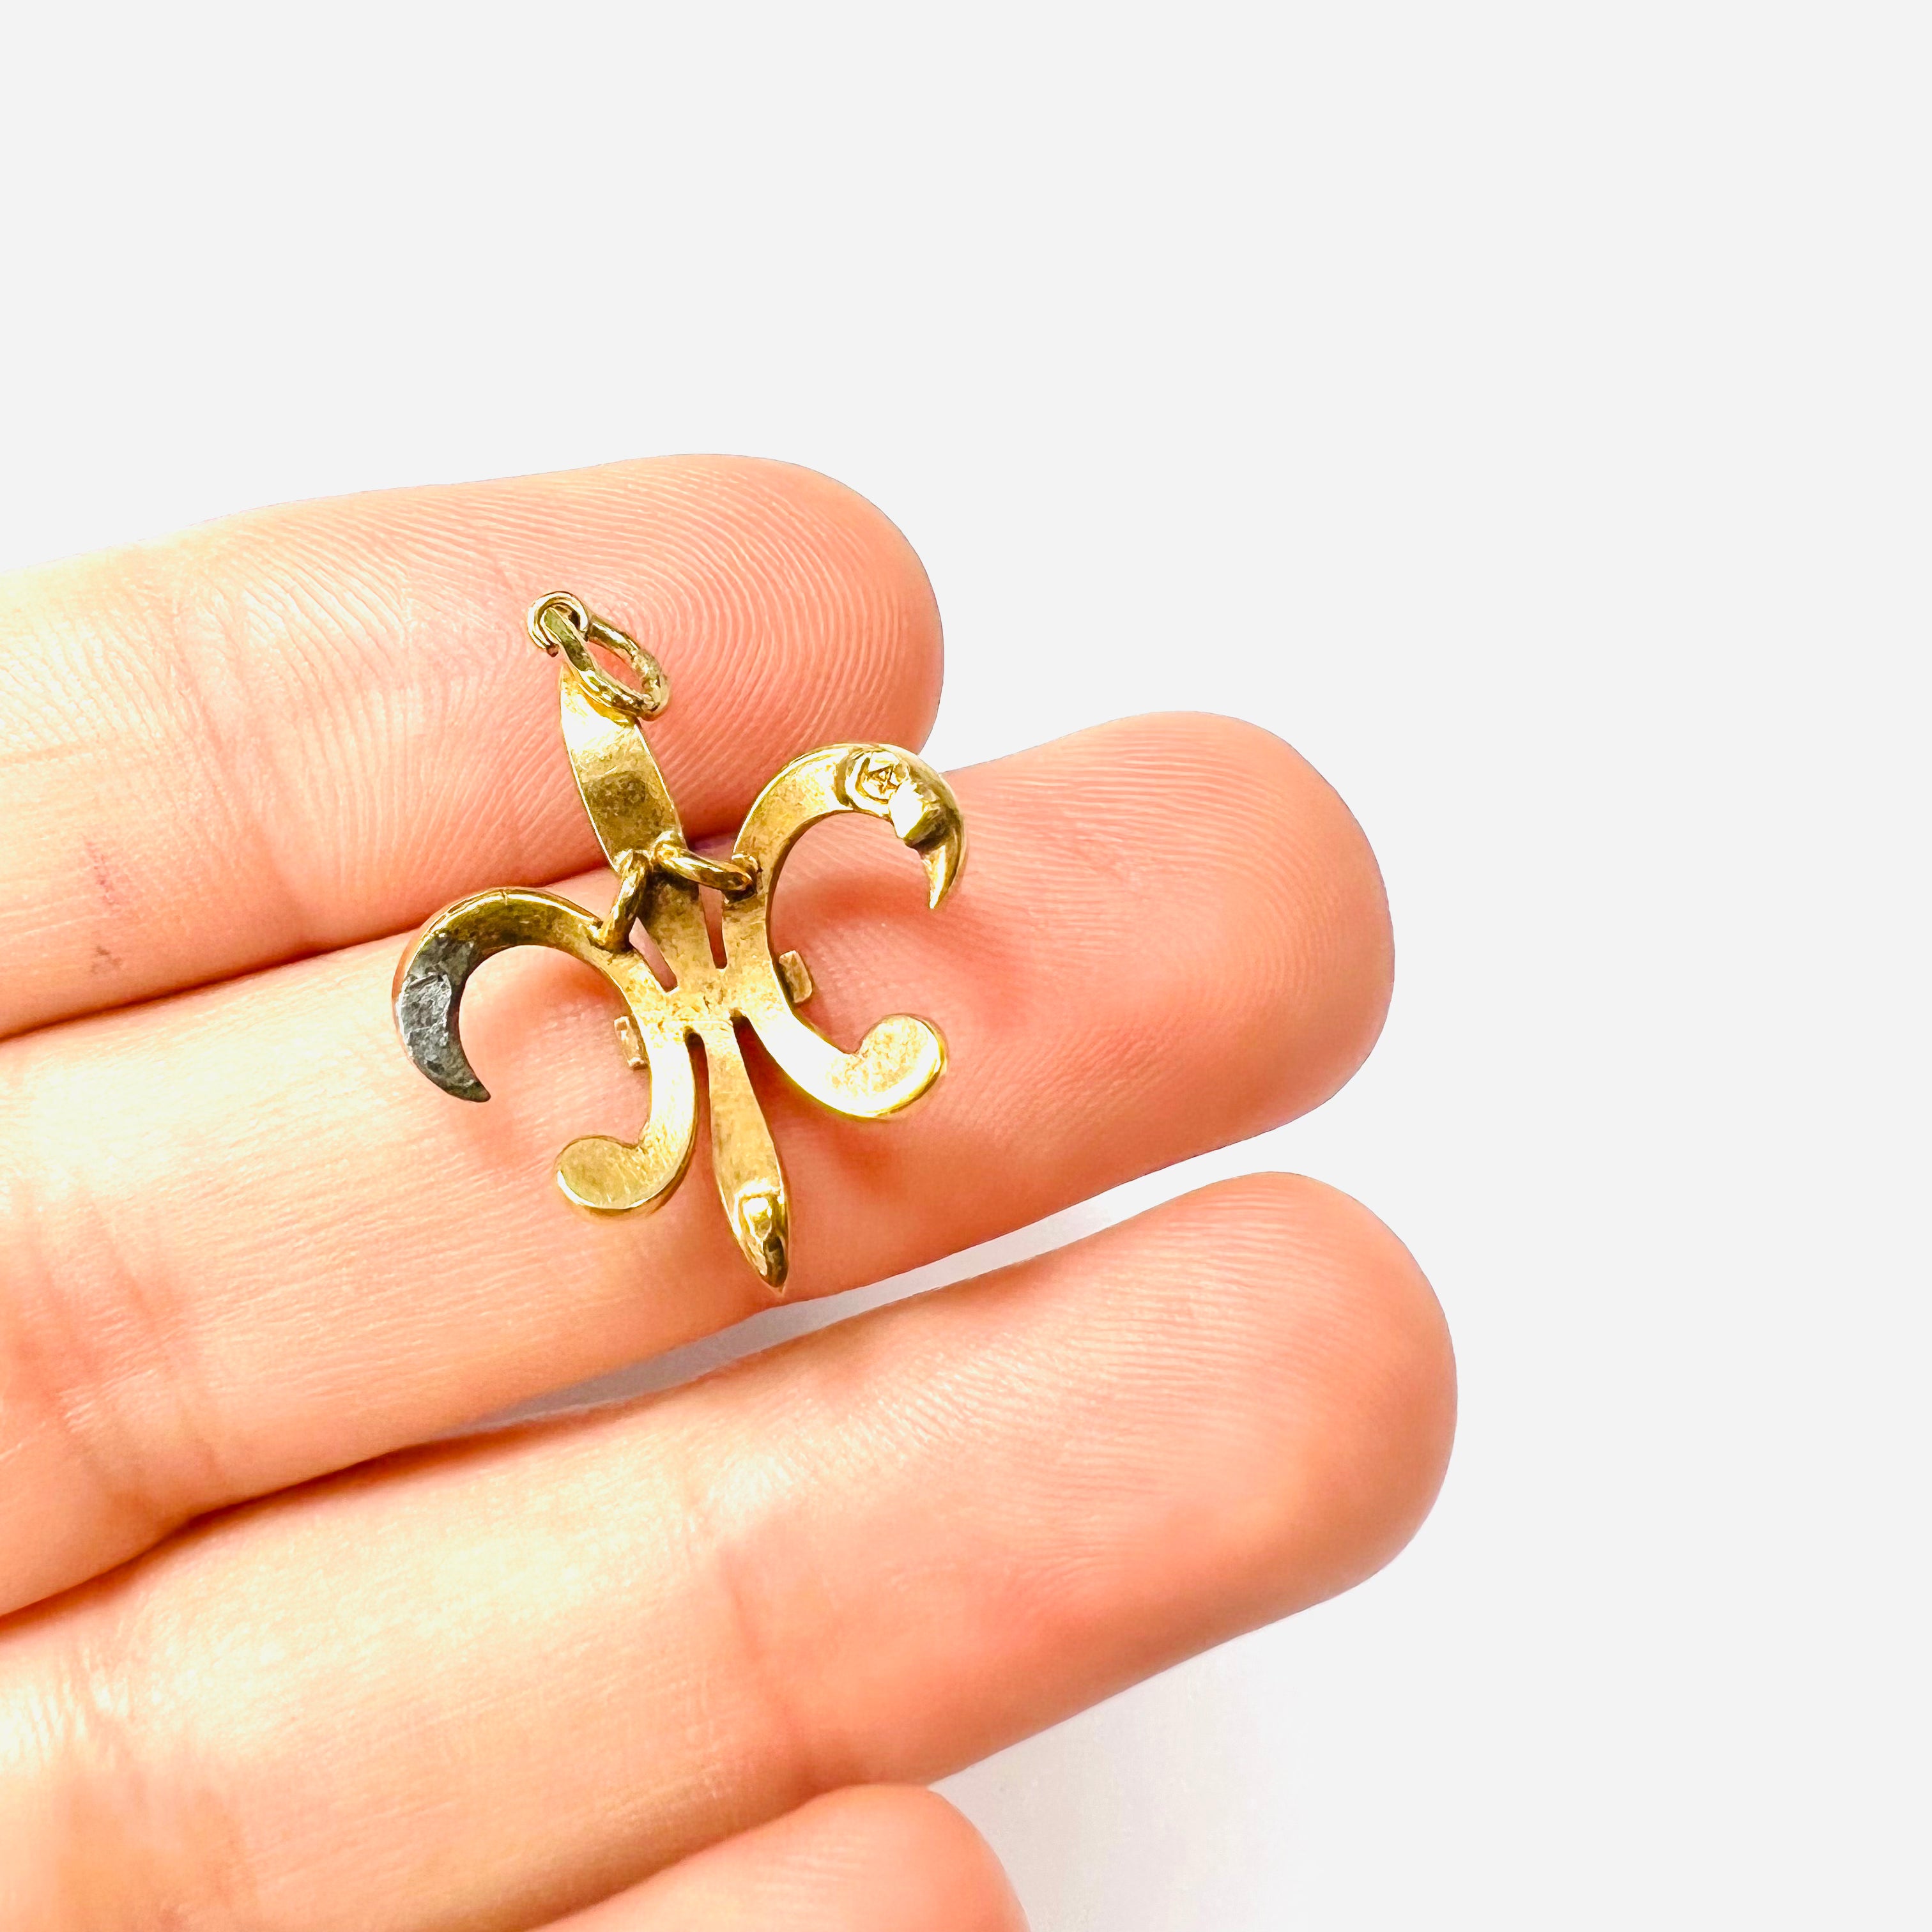 Antique 14K Yellow Gold Fleur De Lis Seed Pearl Pendant Charm